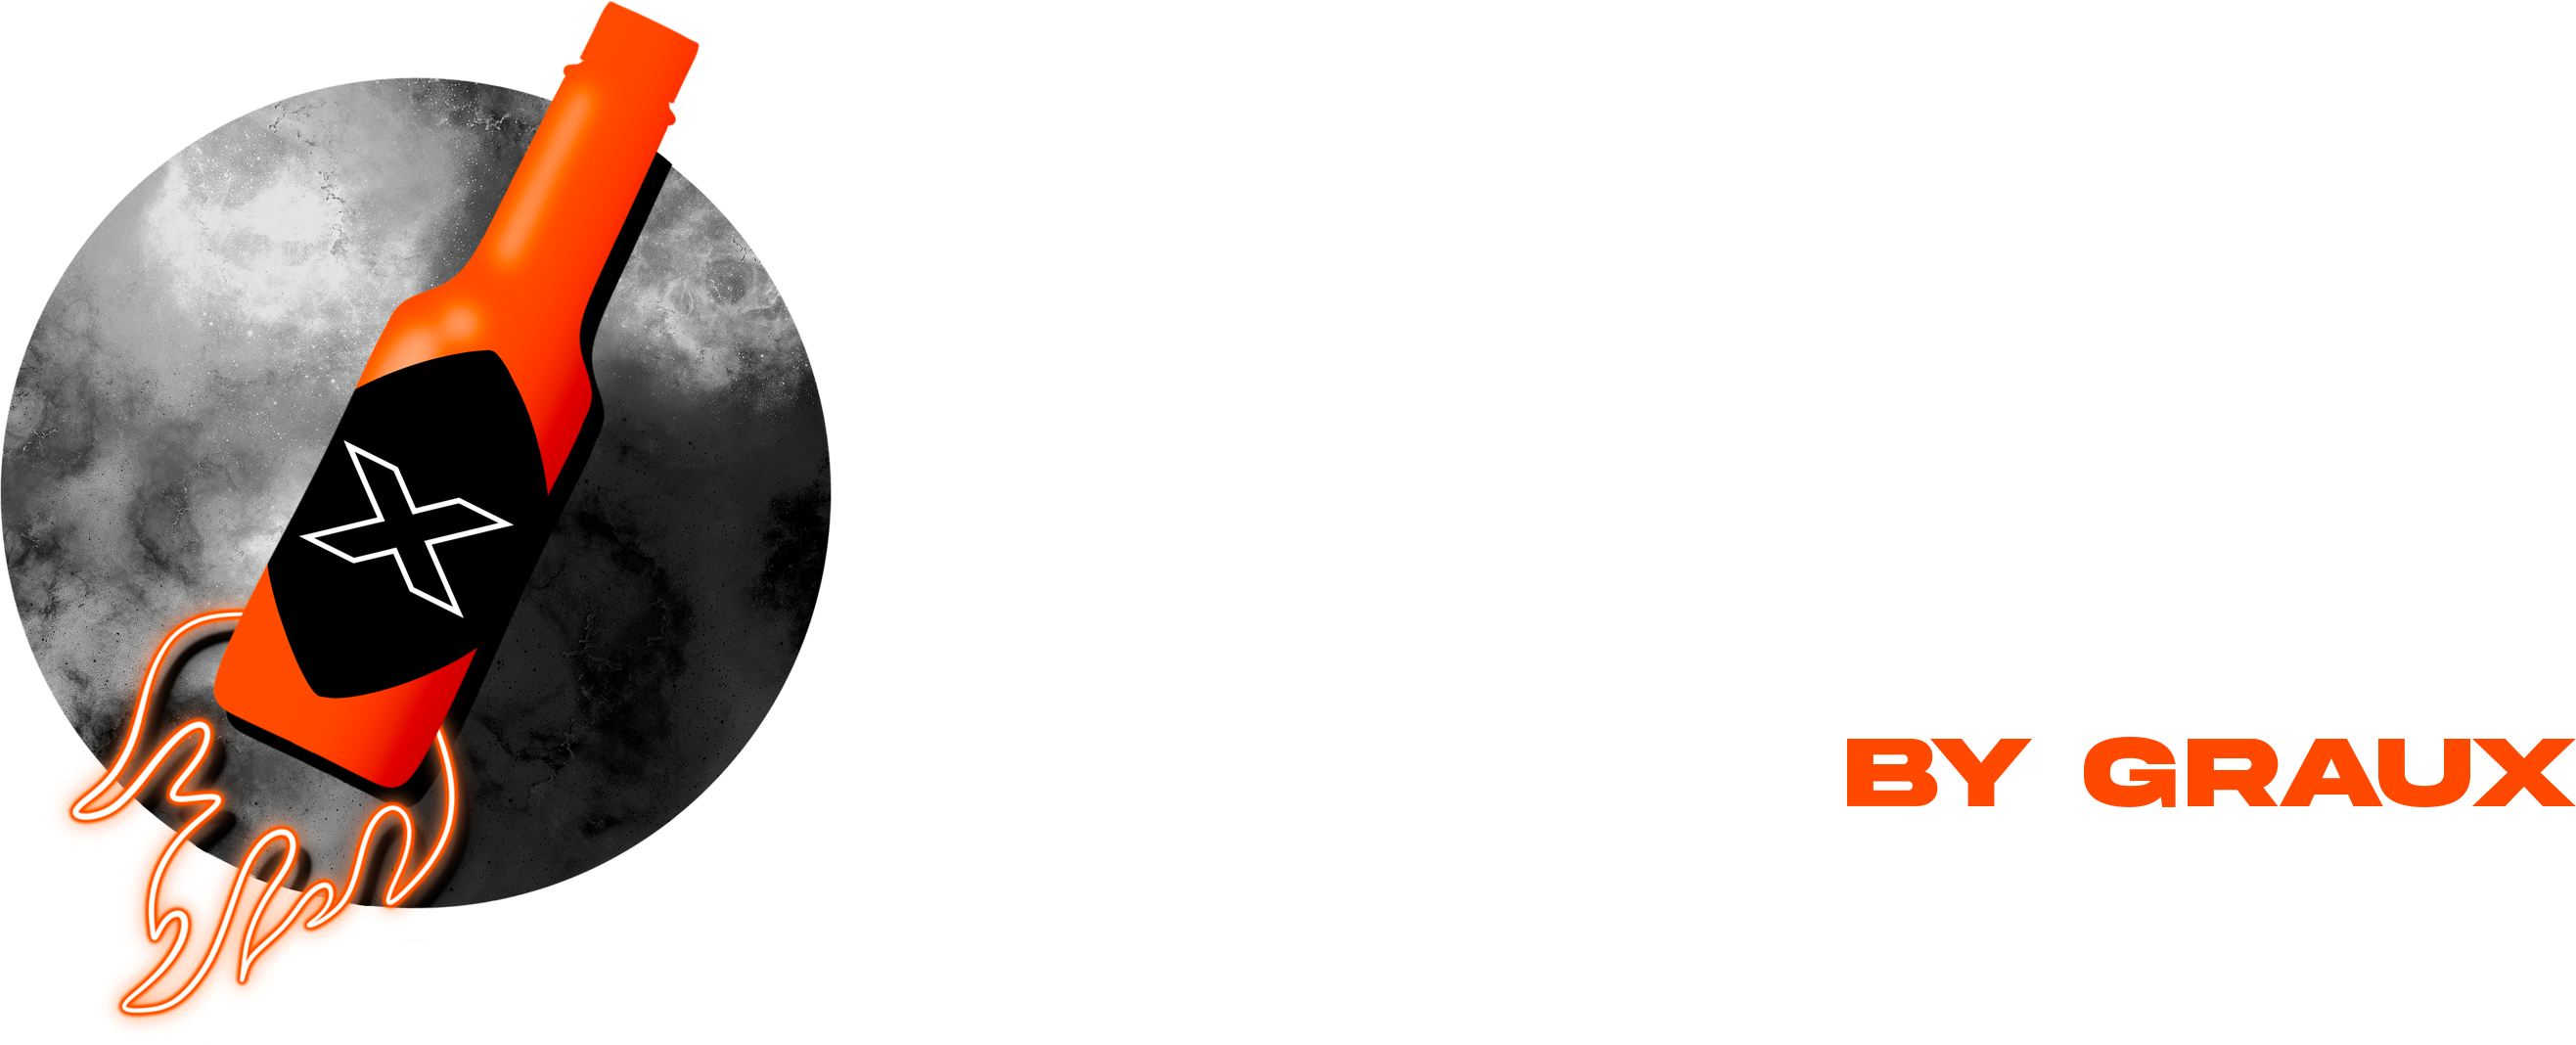 spicyx_banner